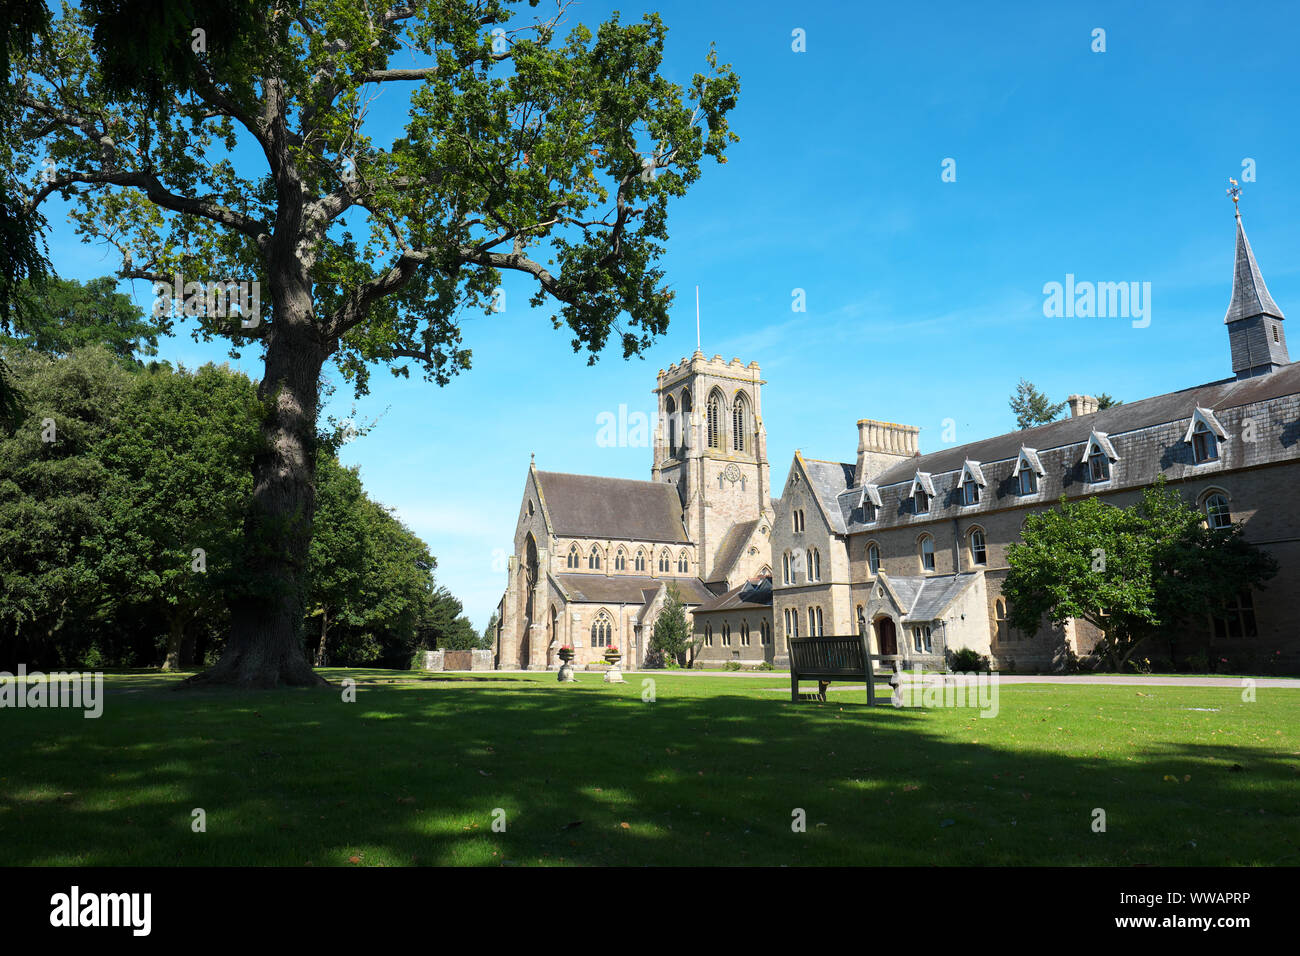 Belmont Abbey außerhalb von Hereford, Herefordshire, UK ist eine Katholische Benediktinerkloster. Stockfoto